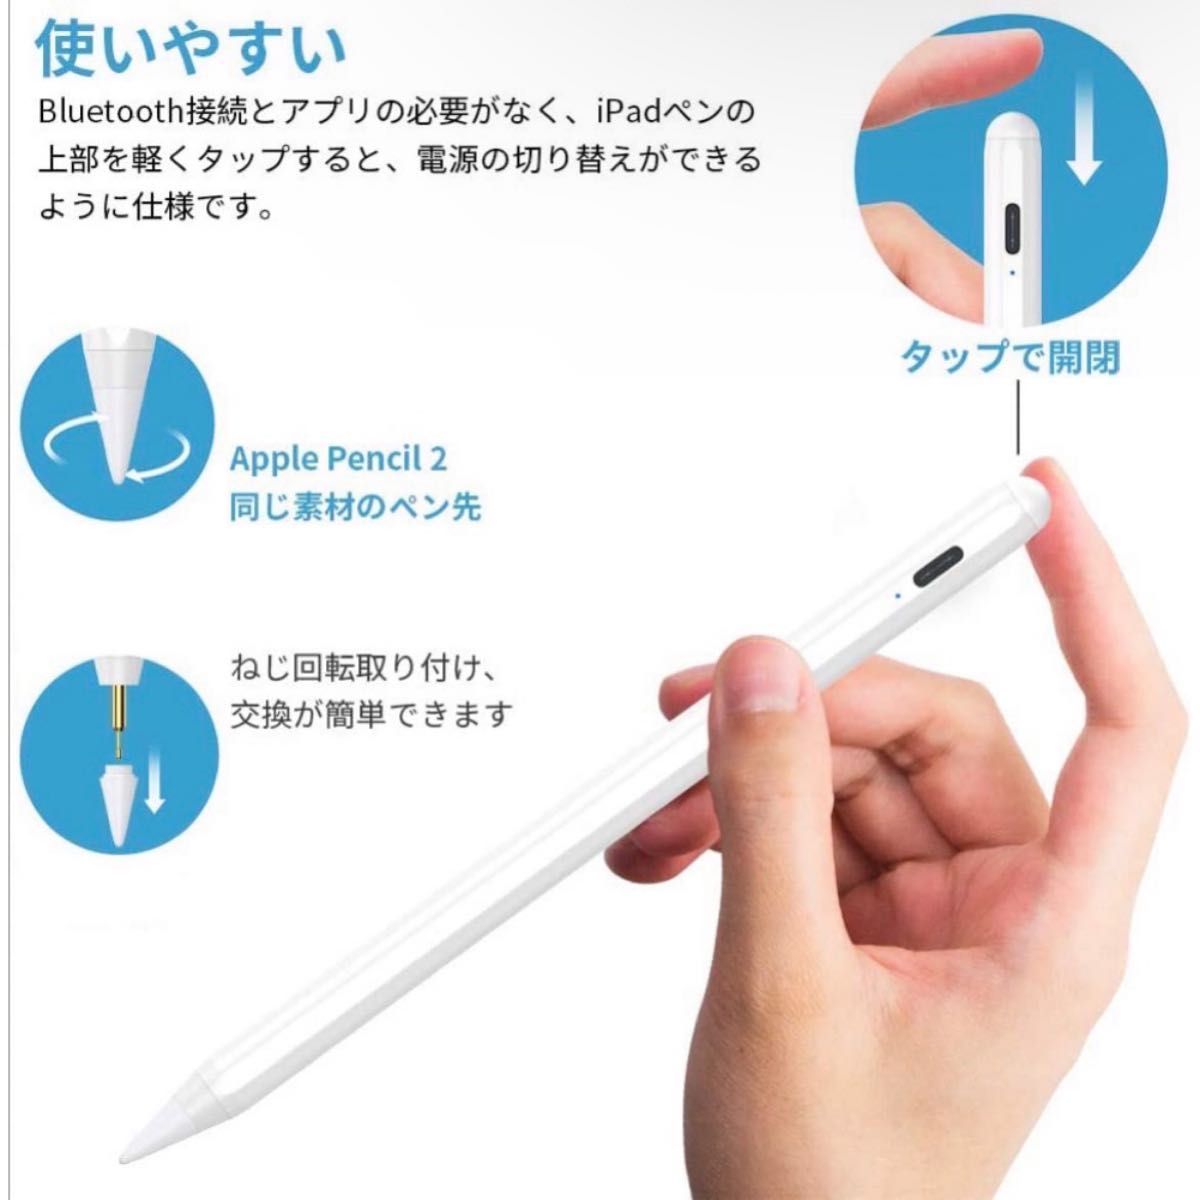 改良型タッチペン iPad ペン 極細 高感度 磁気吸着 パームリジェクション  充電式